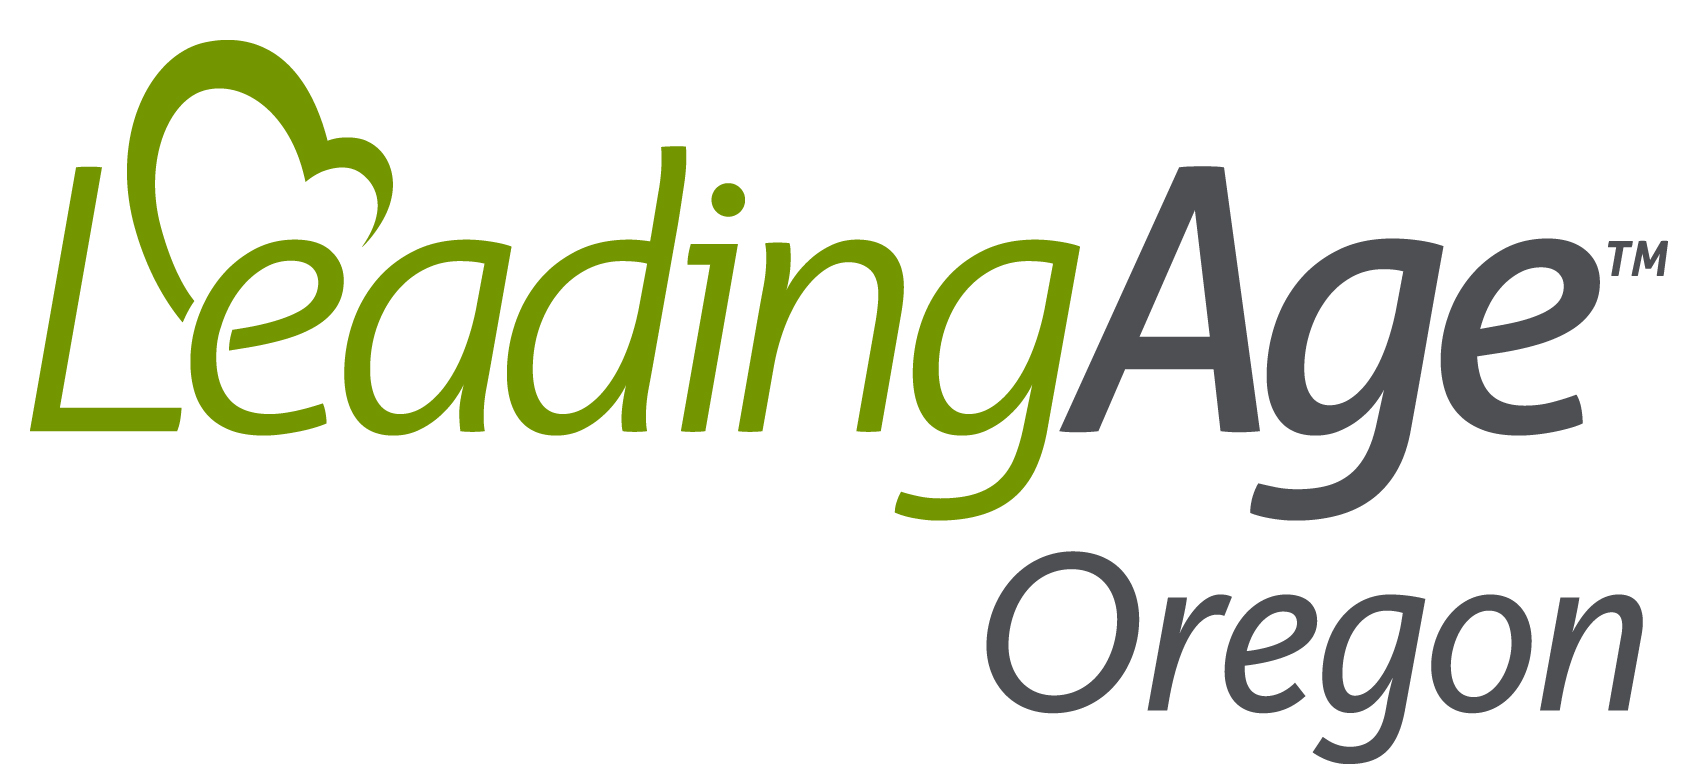 Image of Leading Age Employer Logo